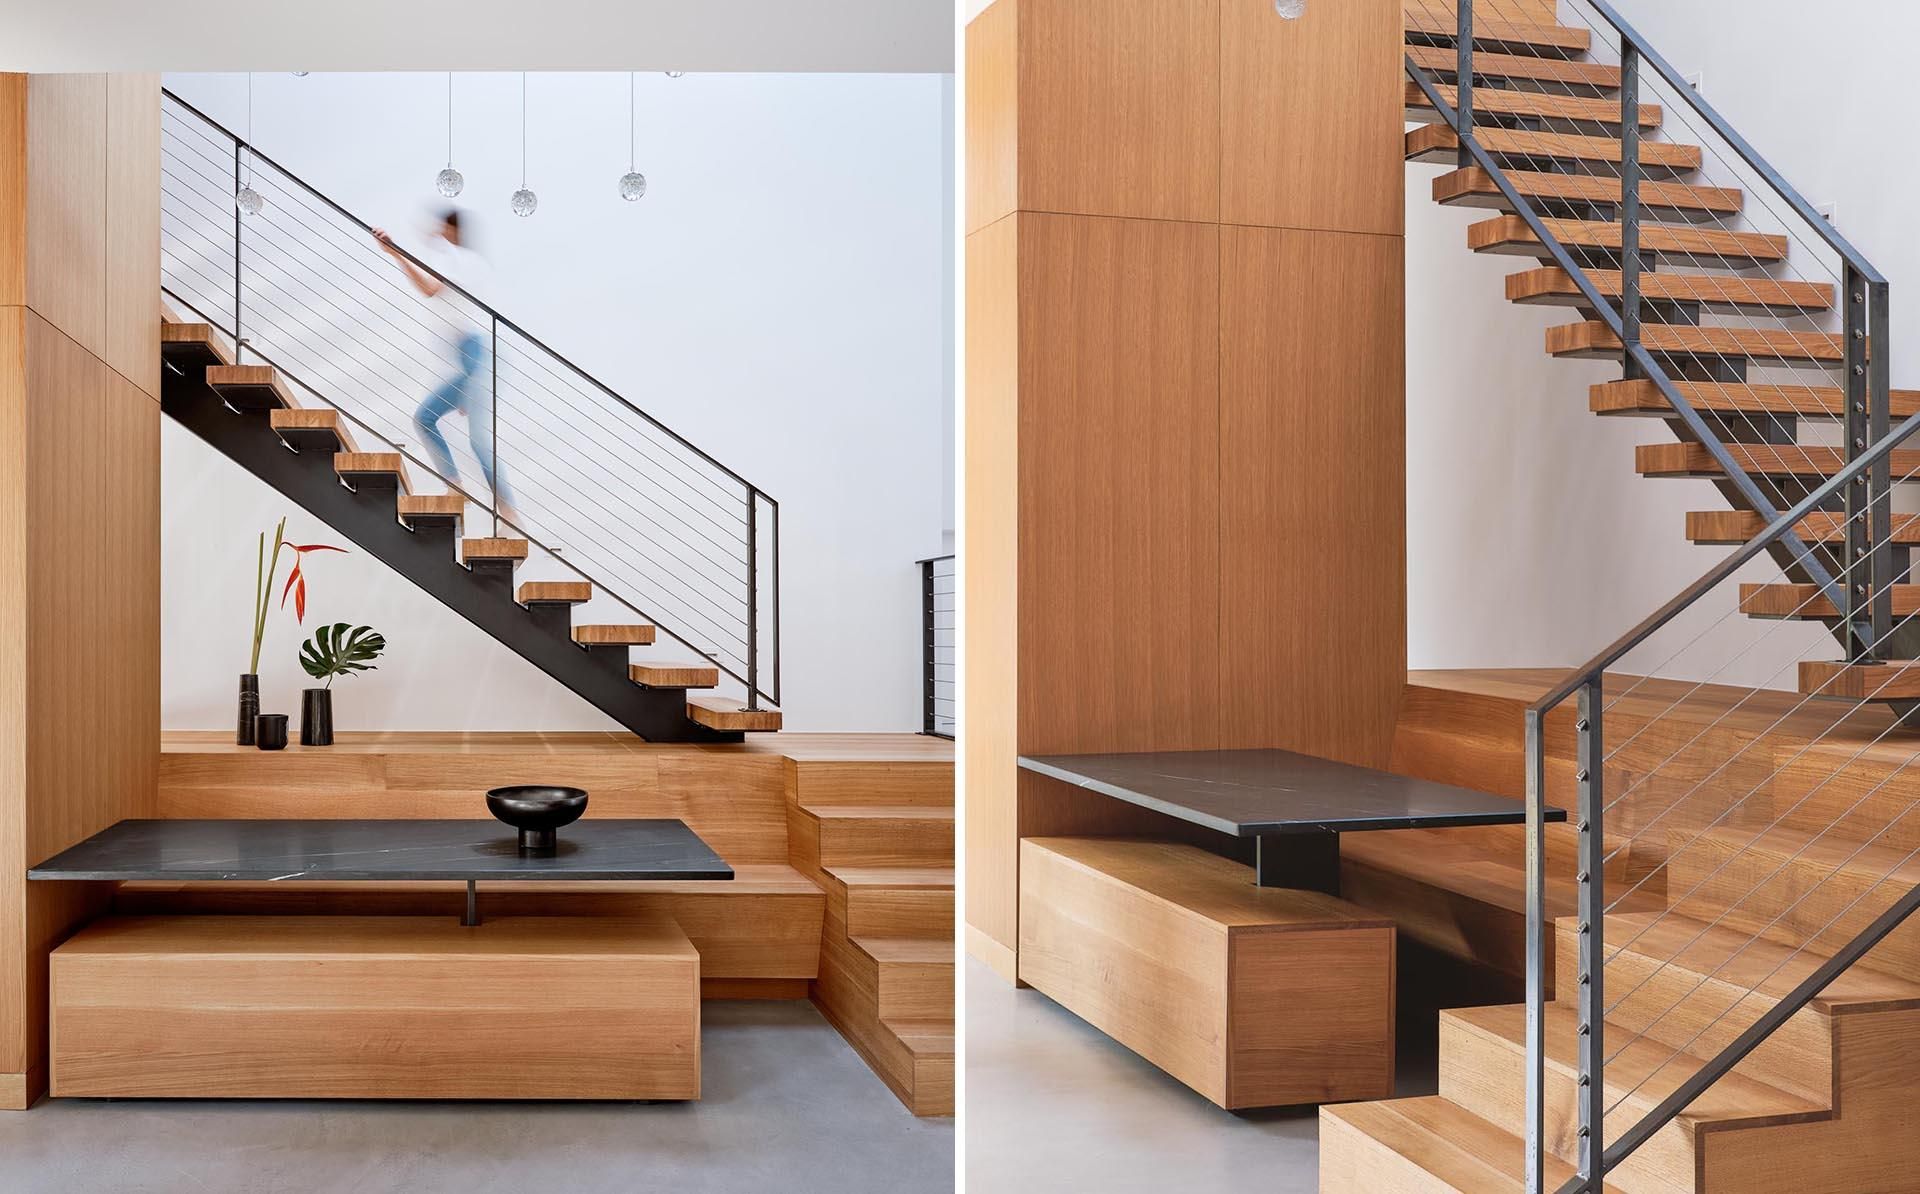 Обустройство пространства: в дизайн лестницы встроили обеденную зону